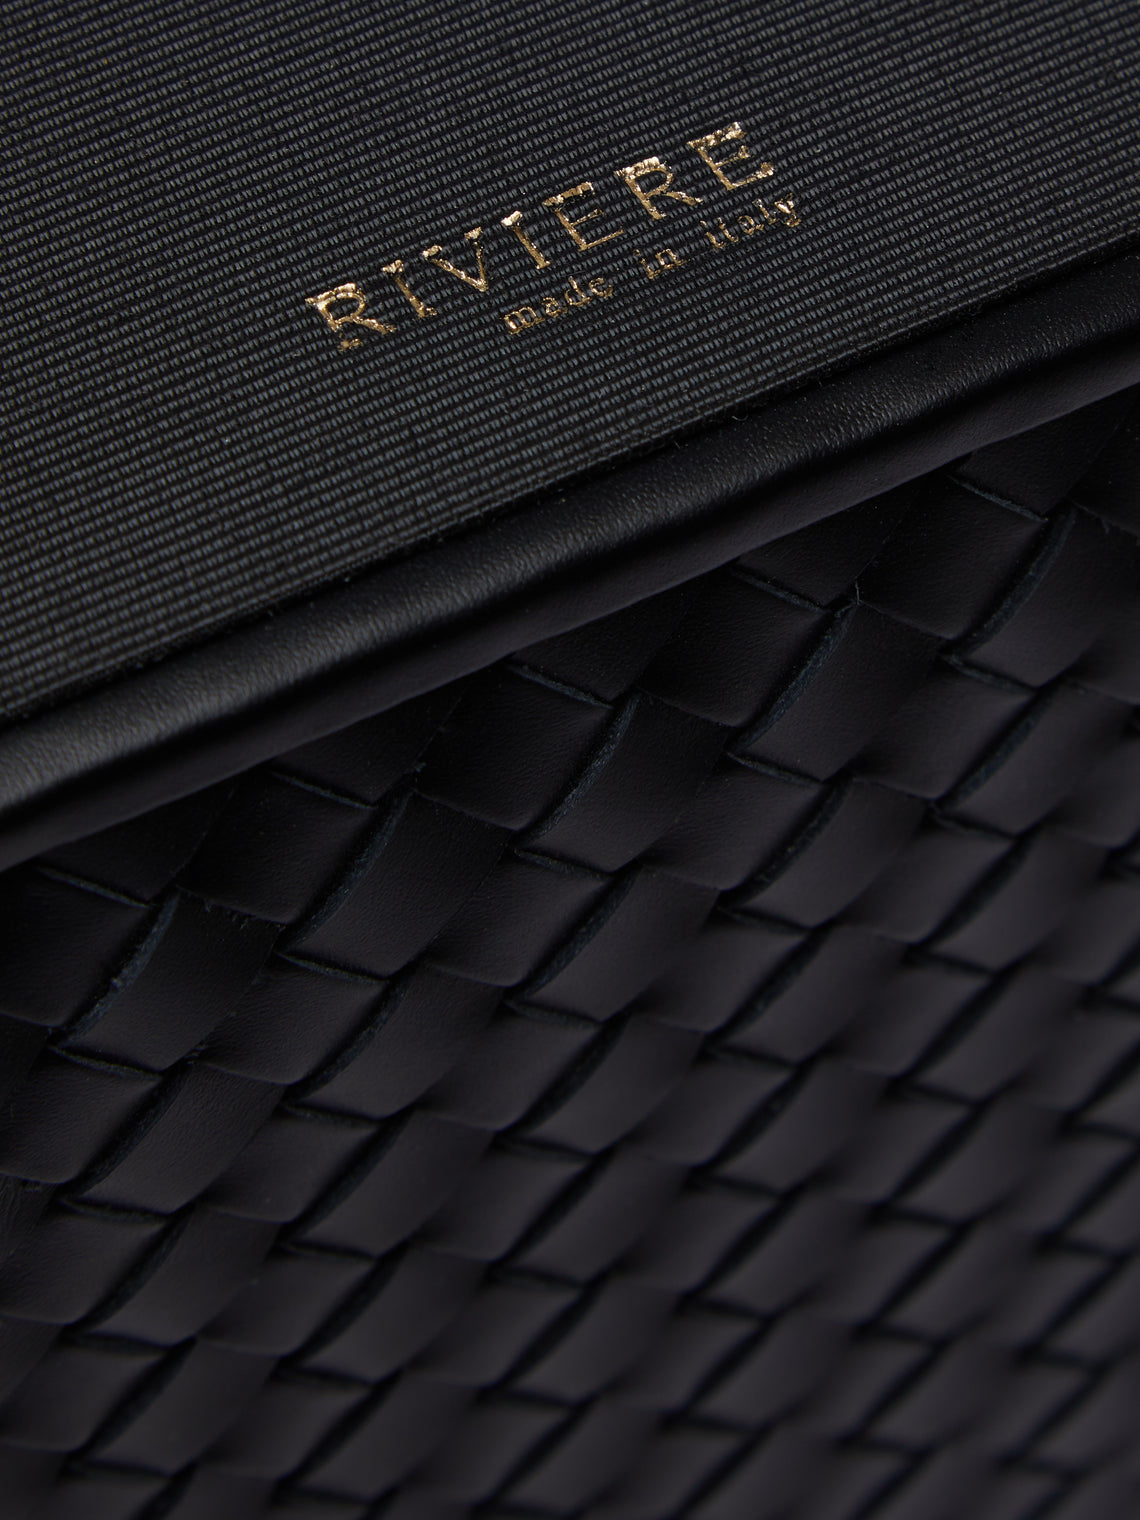 Riviere - Woven Leather Bin - Black - ABASK